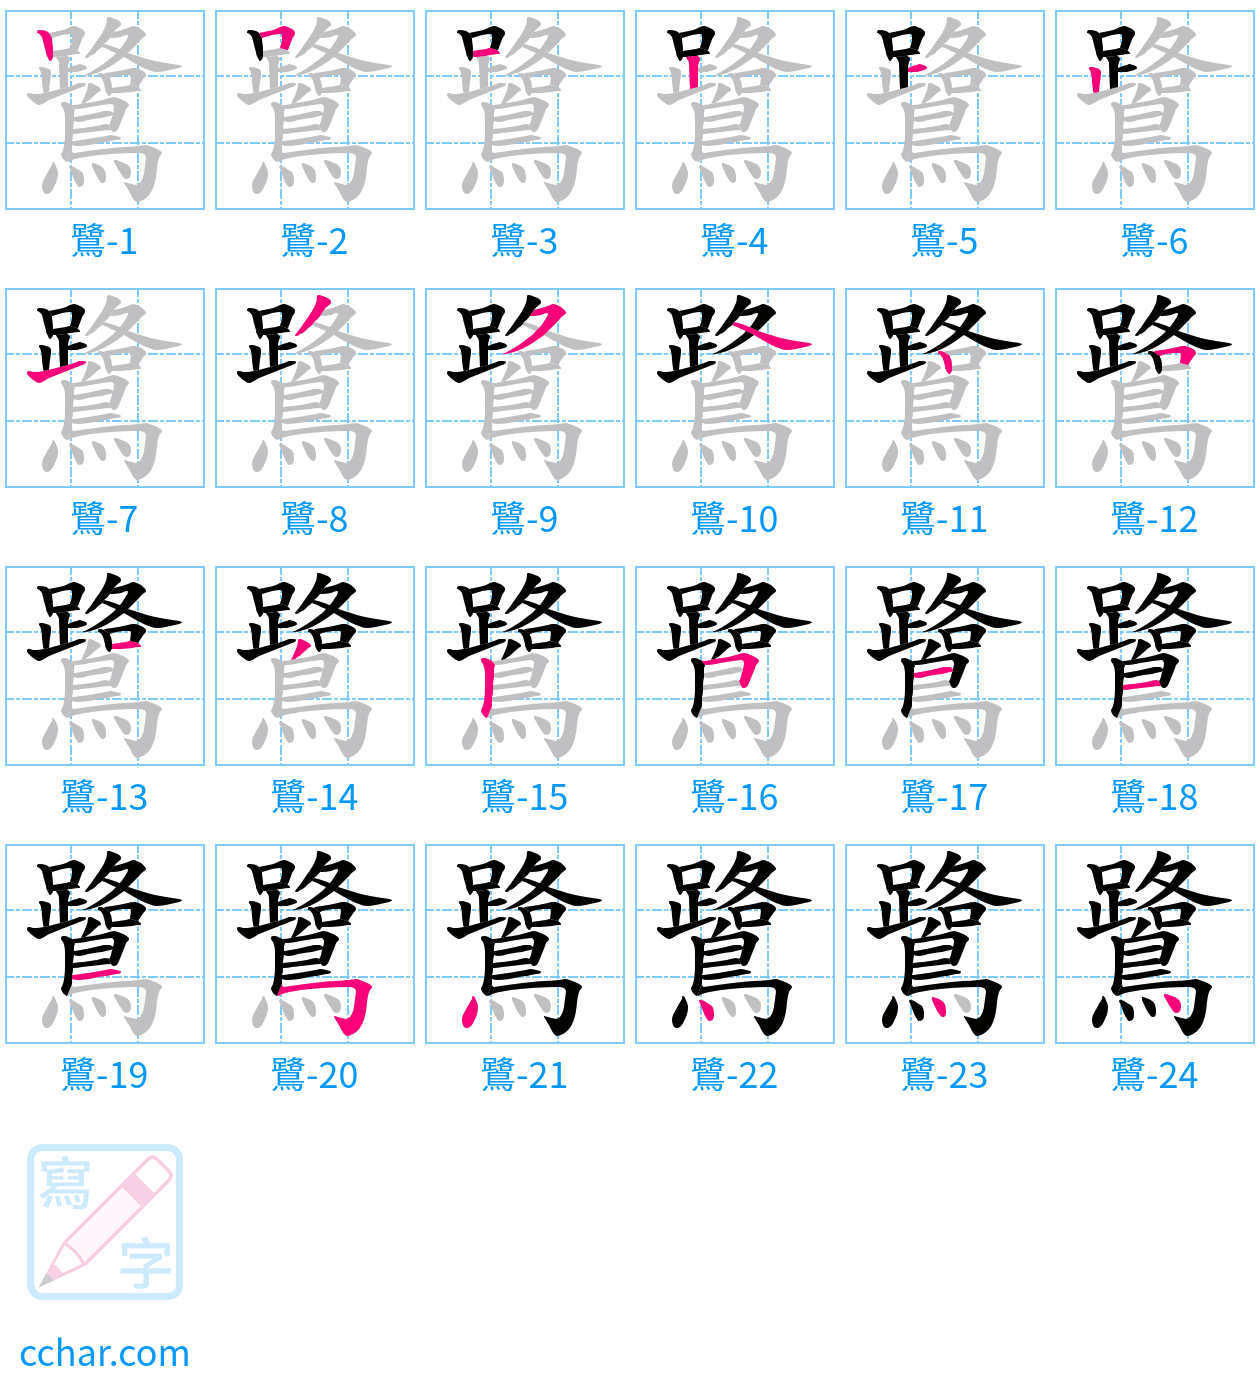 鷺 stroke order step-by-step diagram